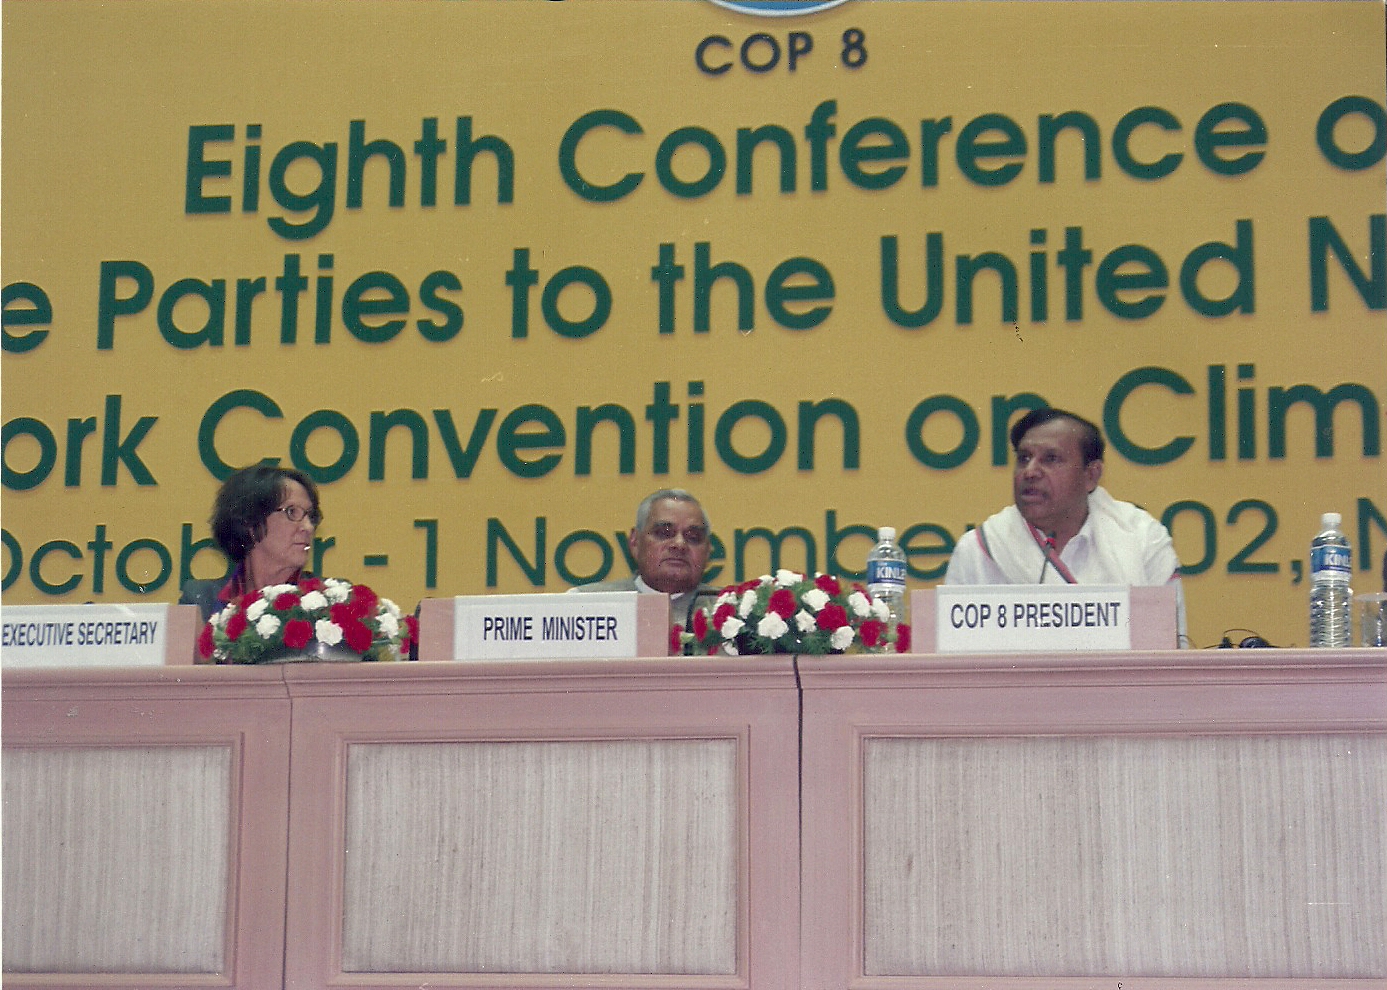 Addressing COP 8 Delhi - Nov 2002